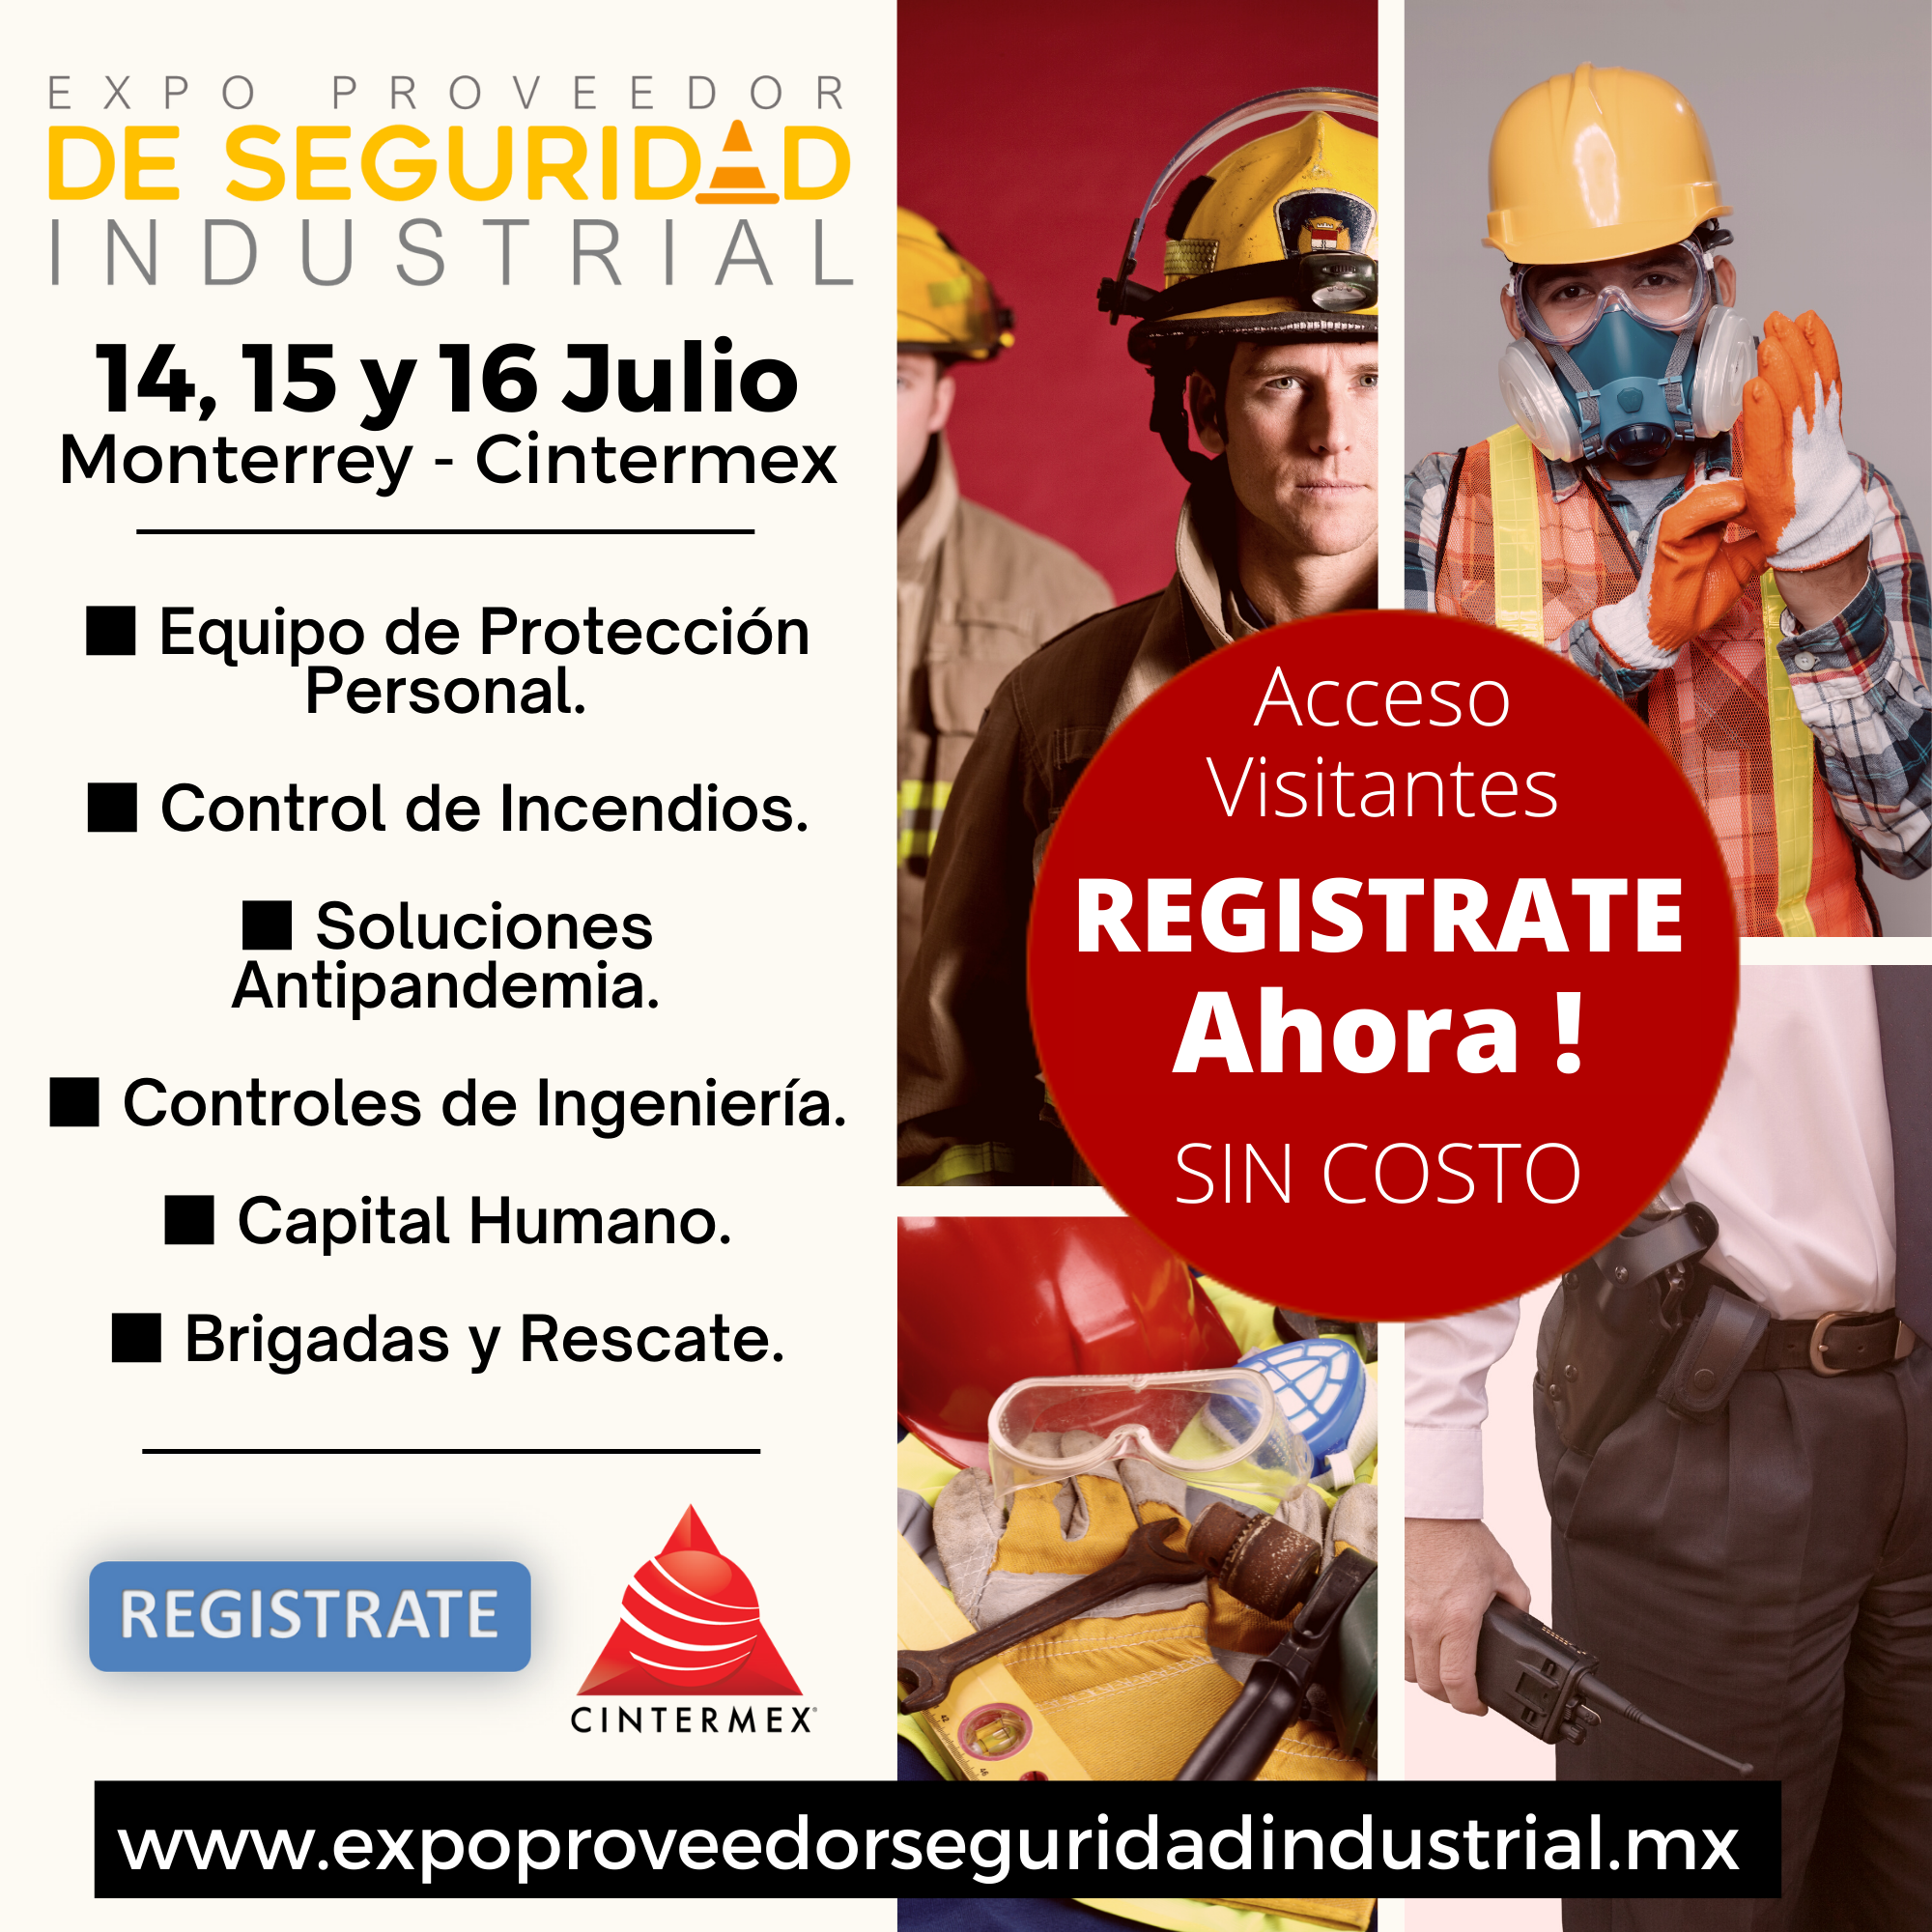 Expo Proveedor de Seguridad Industrial Monterrey Mexico